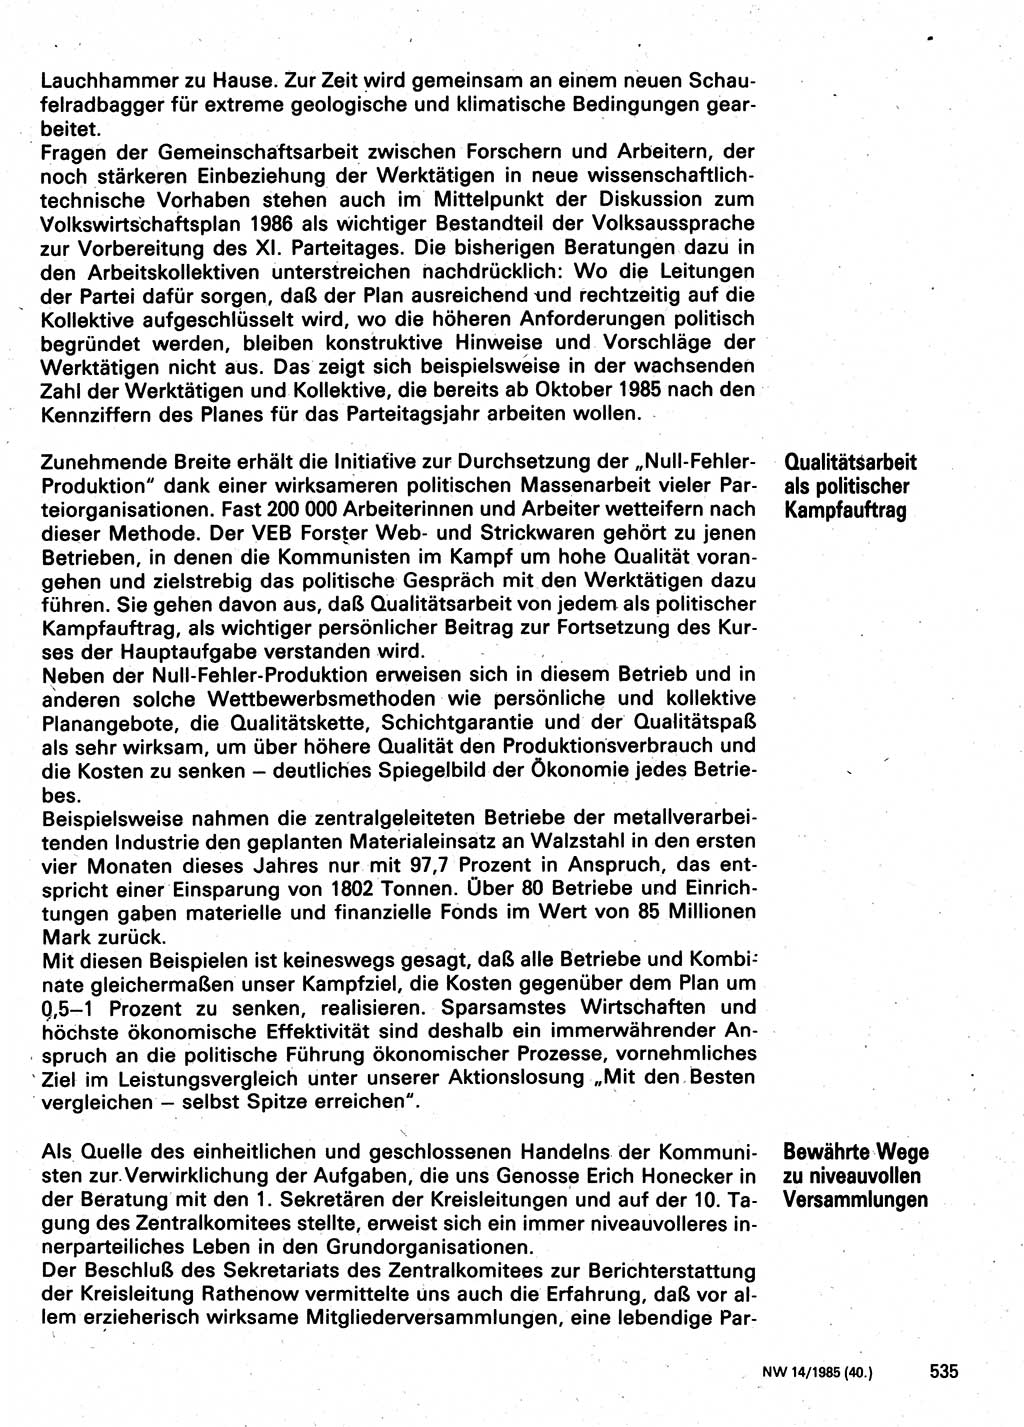 Neuer Weg (NW), Organ des Zentralkomitees (ZK) der SED (Sozialistische Einheitspartei Deutschlands) für Fragen des Parteilebens, 40. Jahrgang [Deutsche Demokratische Republik (DDR)] 1985, Seite 535 (NW ZK SED DDR 1985, S. 535)